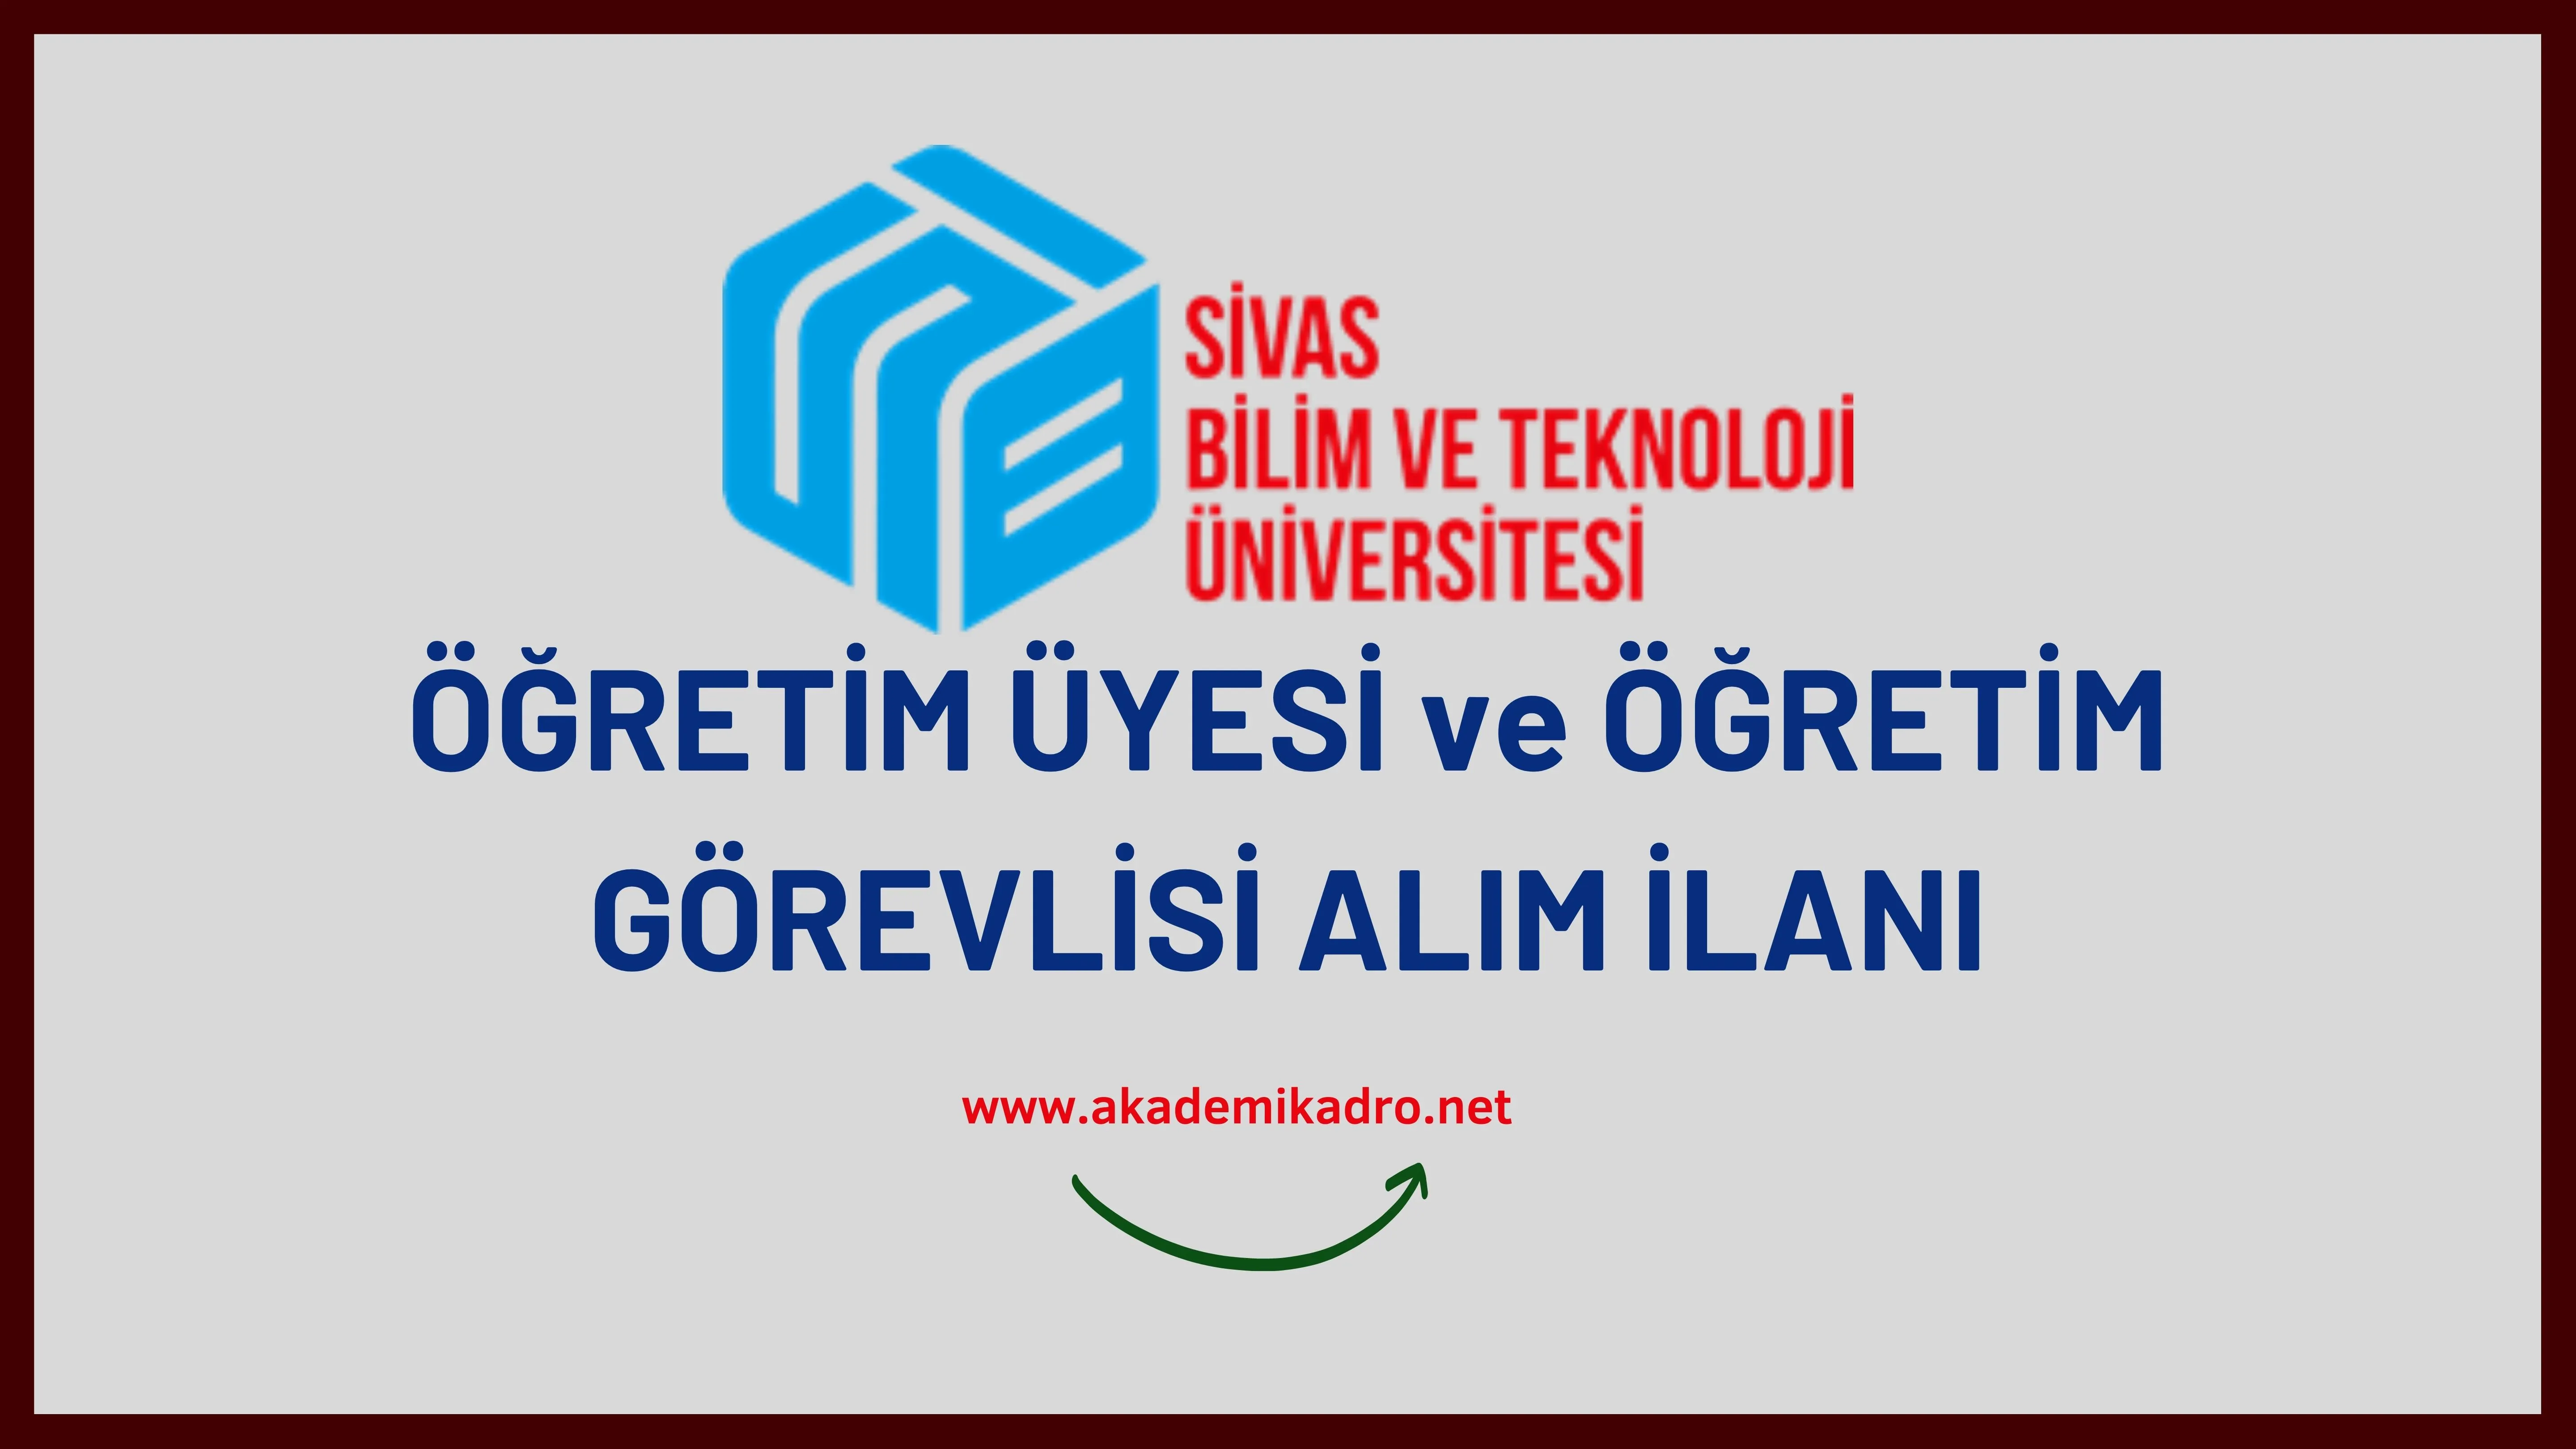 Sivas Bilim ve Teknoloji Üniversitesi 3 Öğretim görevlisi ve 7 Öğretim üyesi olmak üzere 10 Öğretim elemanı alacak.